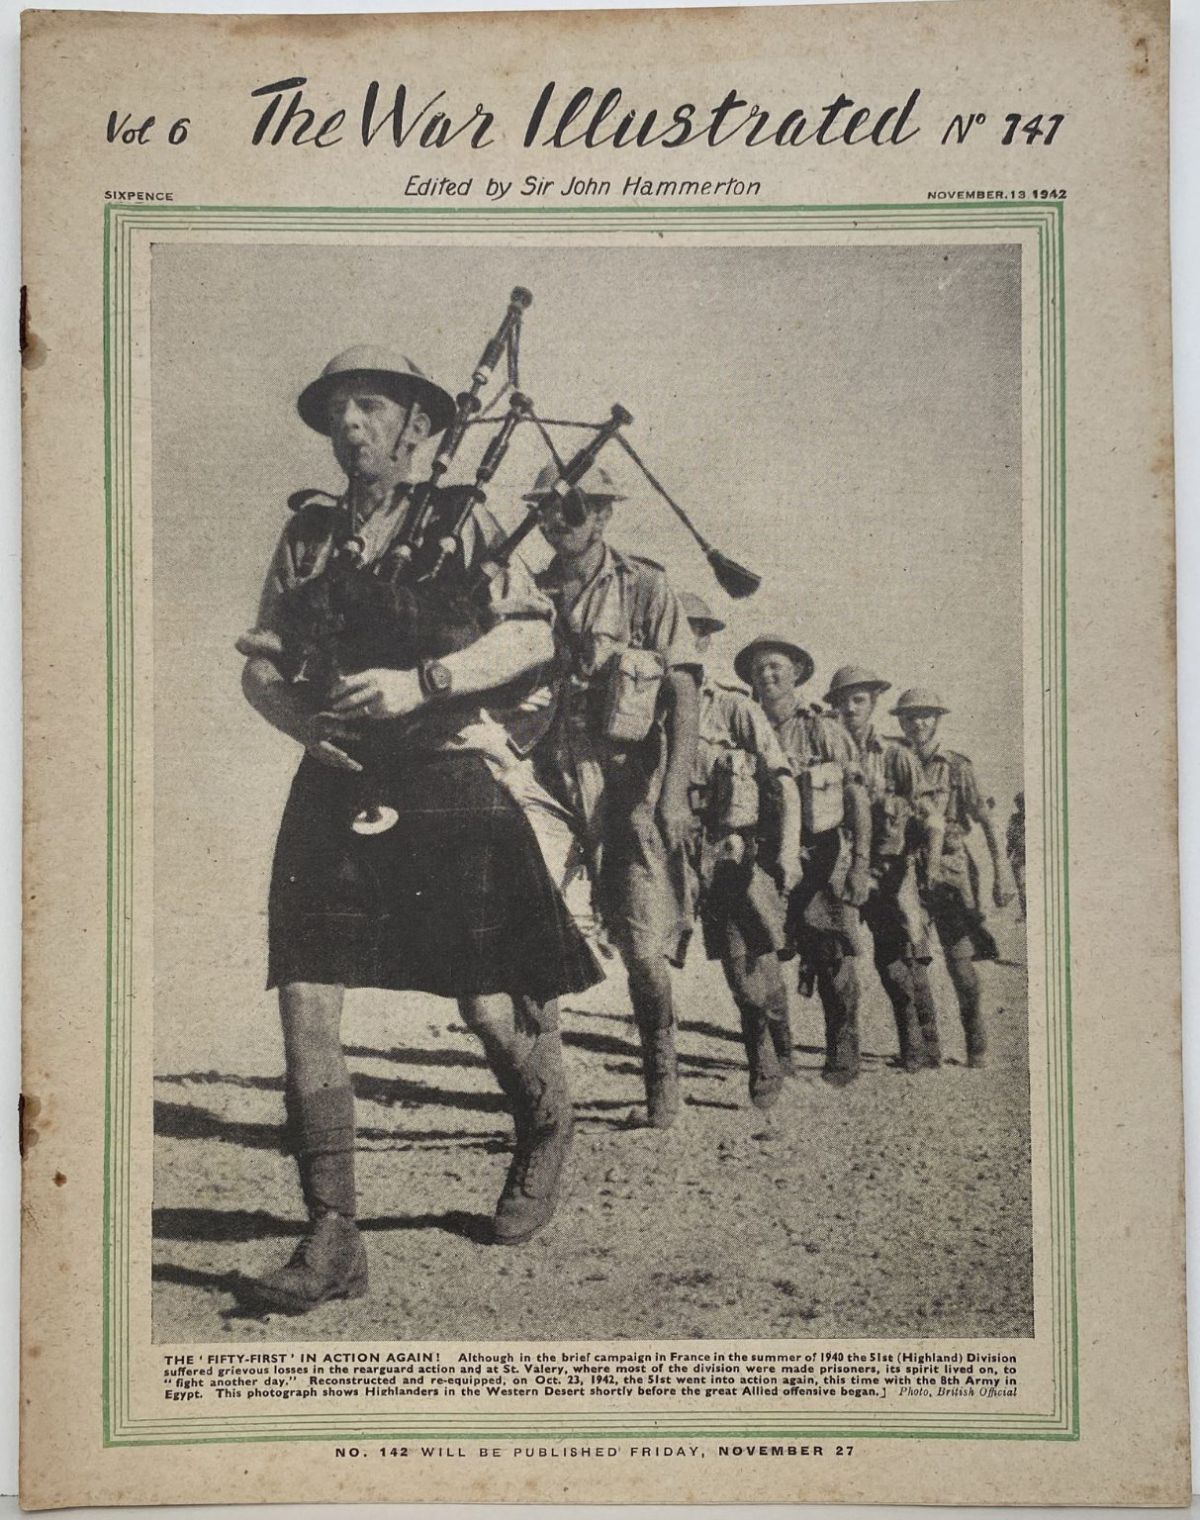 THE WAR ILLUSTRATED - Vol 6, No 141, 13th Nov 1942